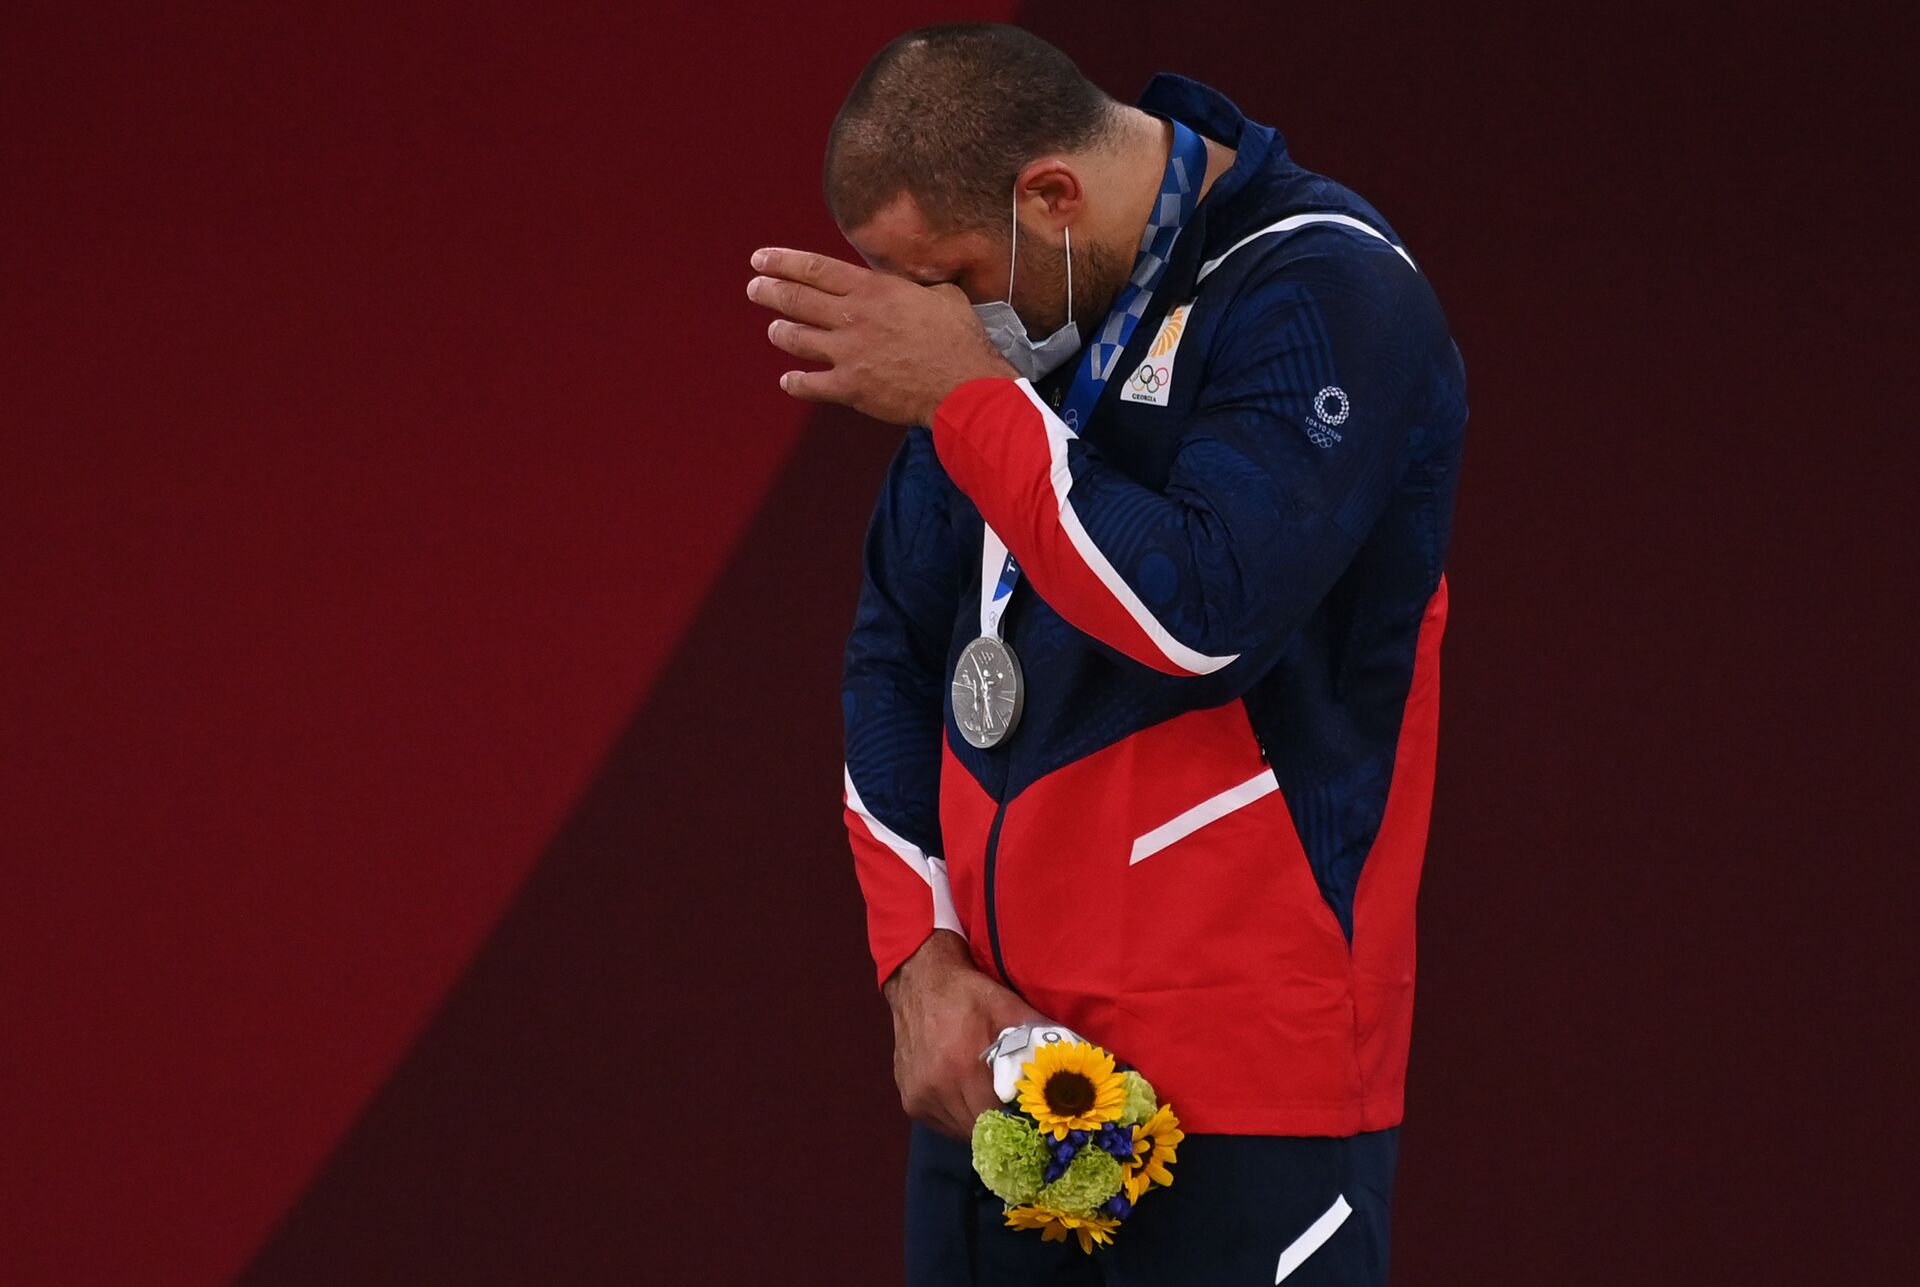 Гурам Тушишвили (Грузия), завоевавший серебряную медаль в соревнованиях по дзюдо в весовой категории свыше 100 кг среди мужчин на XXXII летних Олимпийских играх, на церемонии награждения - Sputnik Азербайджан, 1920, 01.10.2021